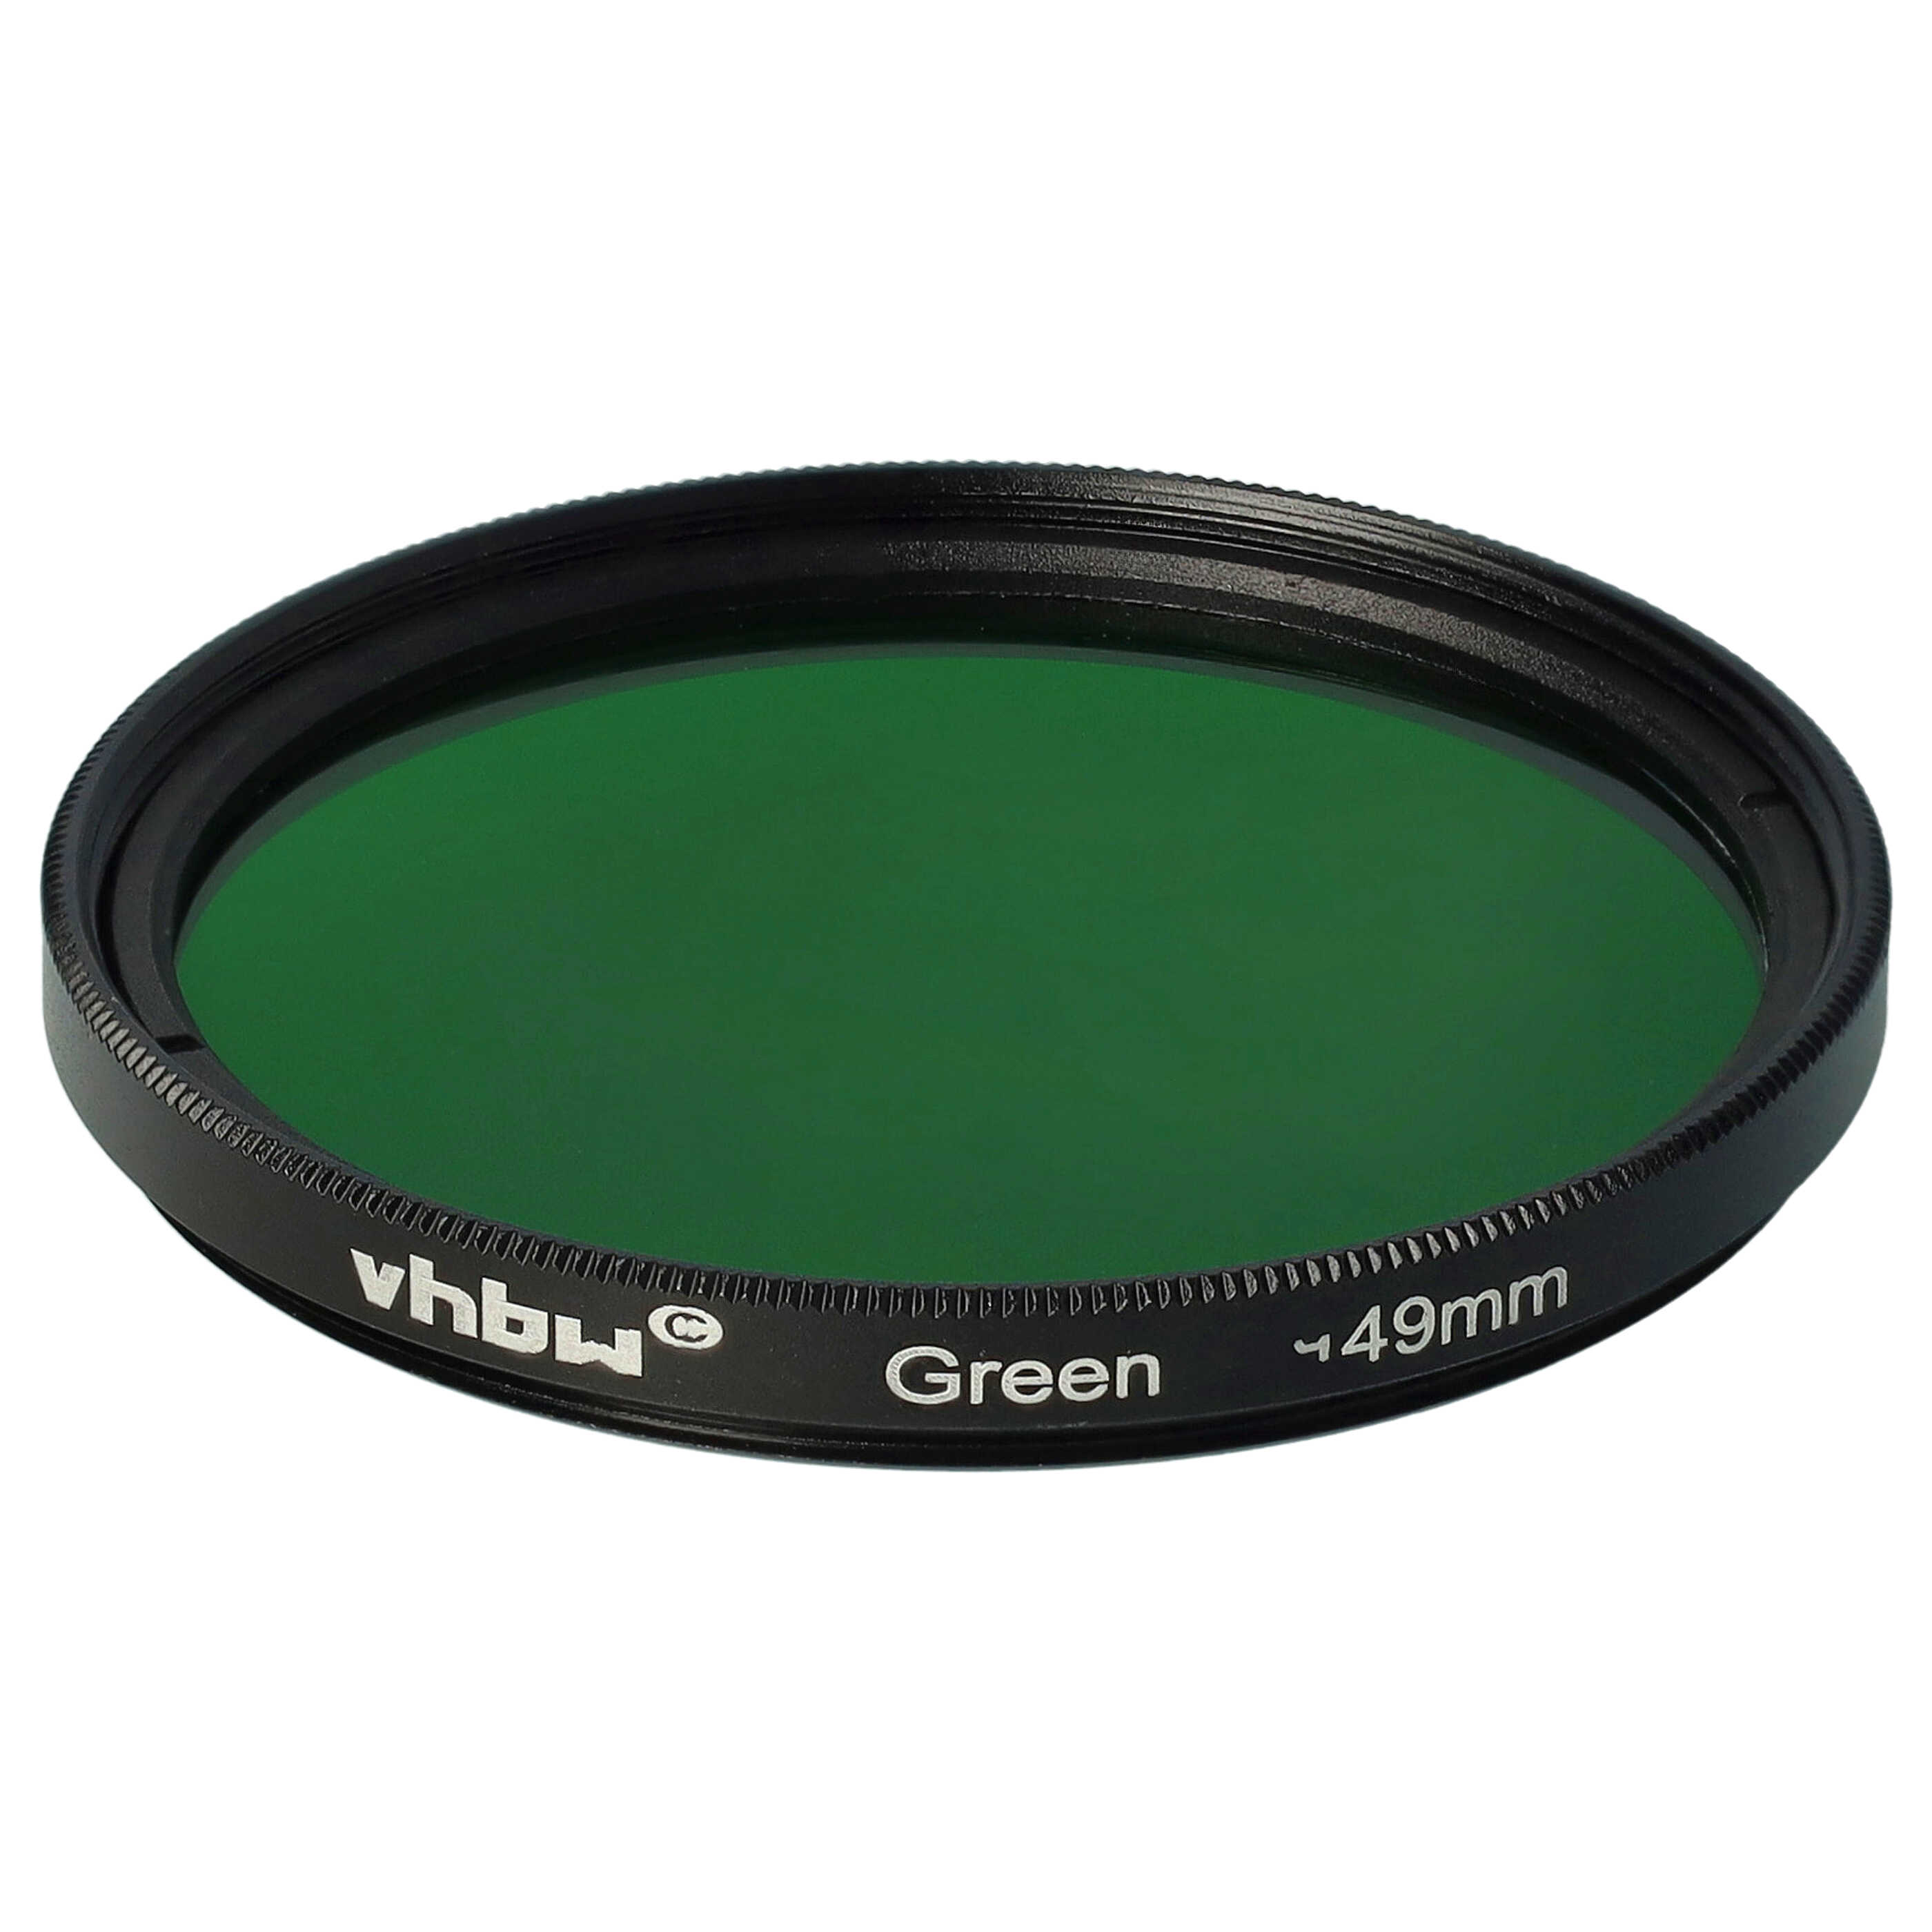 Farbfilter grün passend für Kamera Objektive mit 49 mm Filtergewinde - Grünfilter